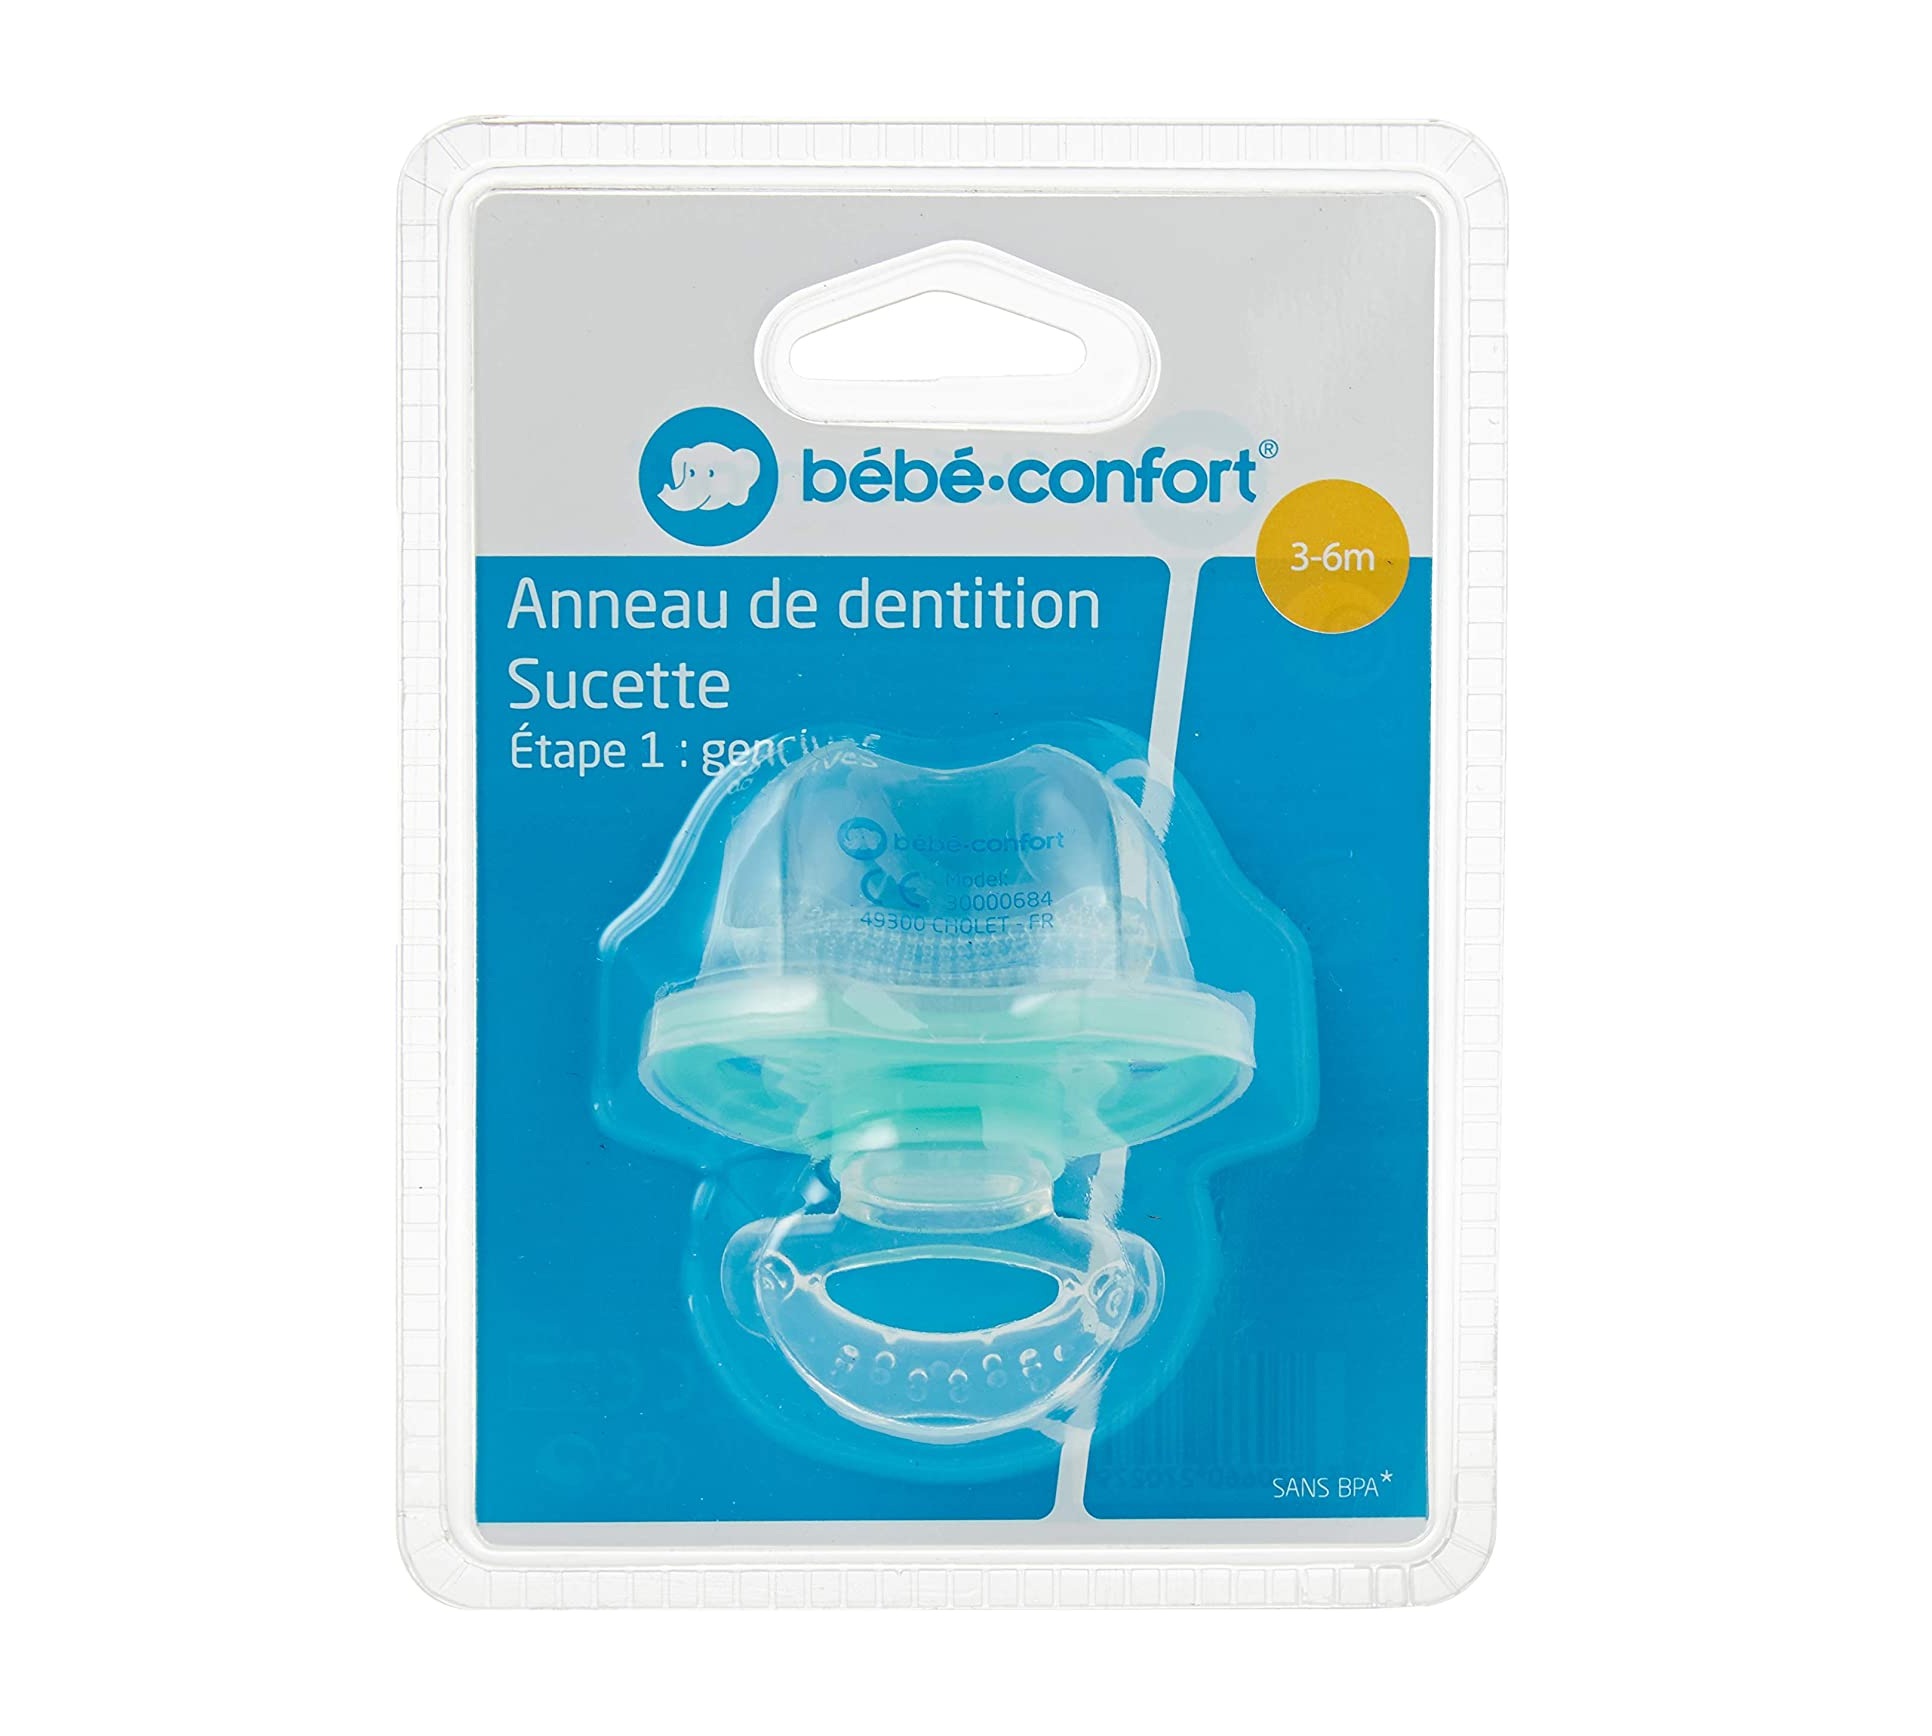 Bébé Confort Sucette Anneau de Dentition Etape 1